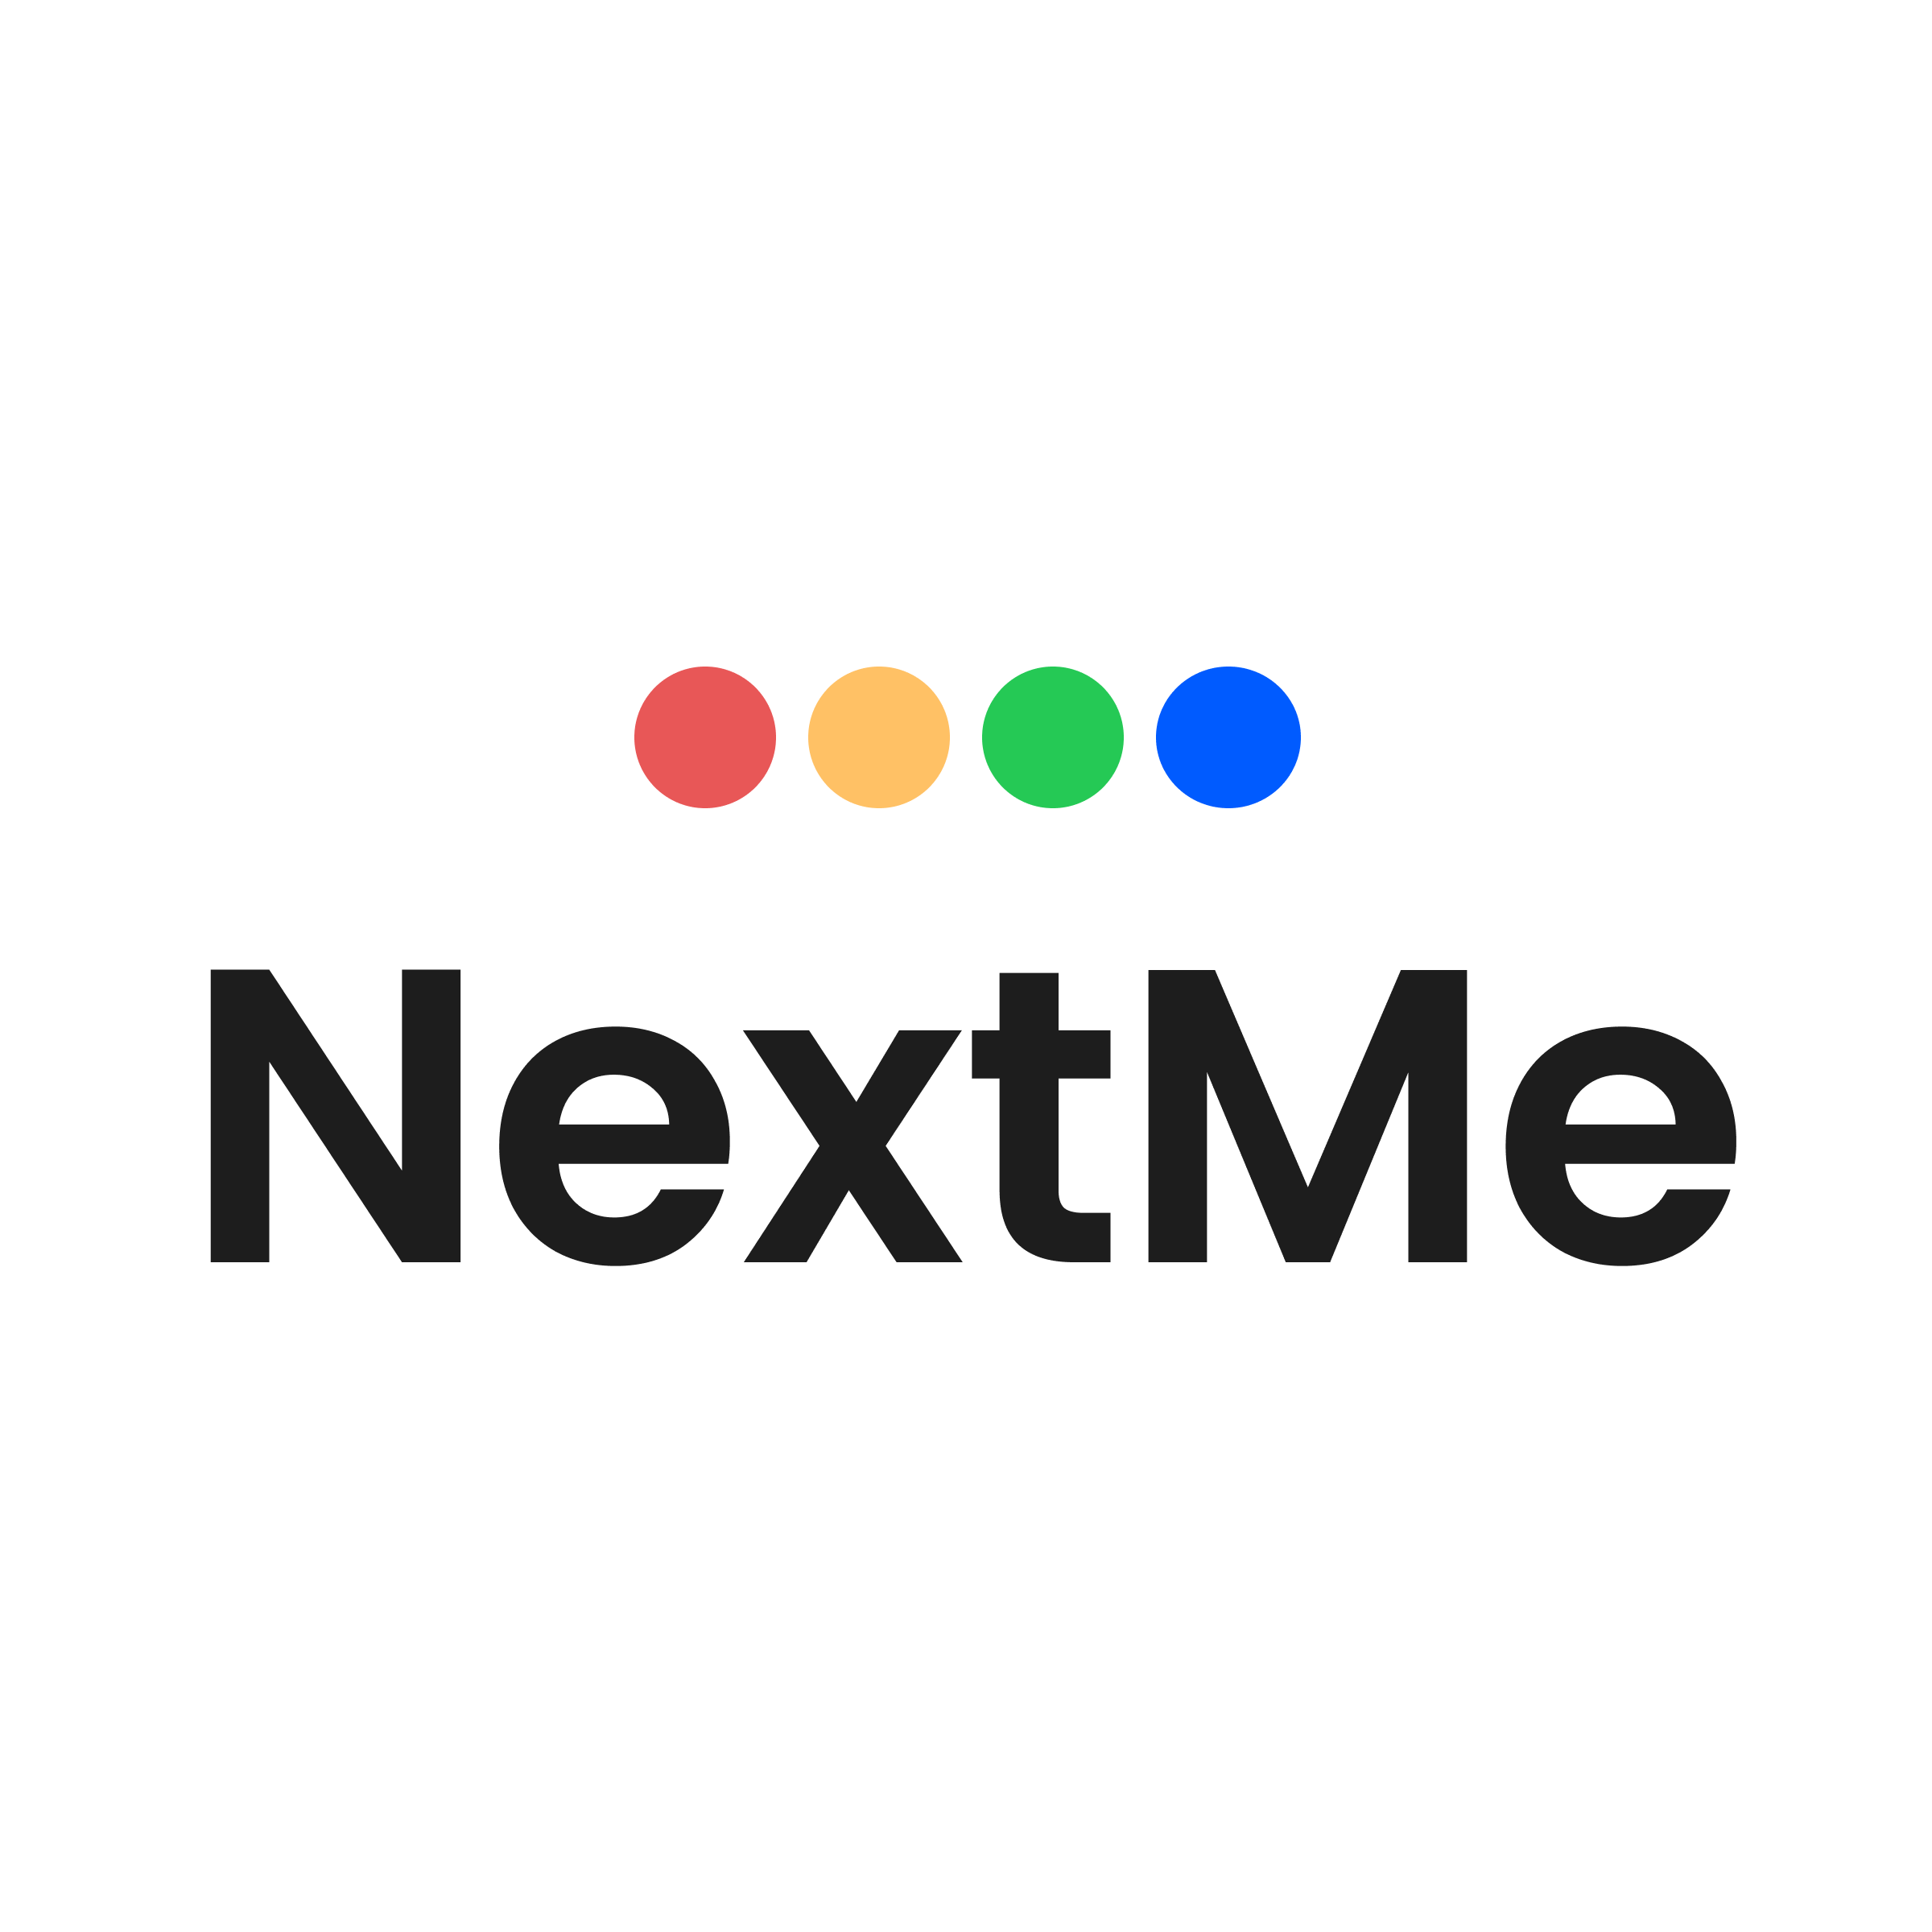 NextMe